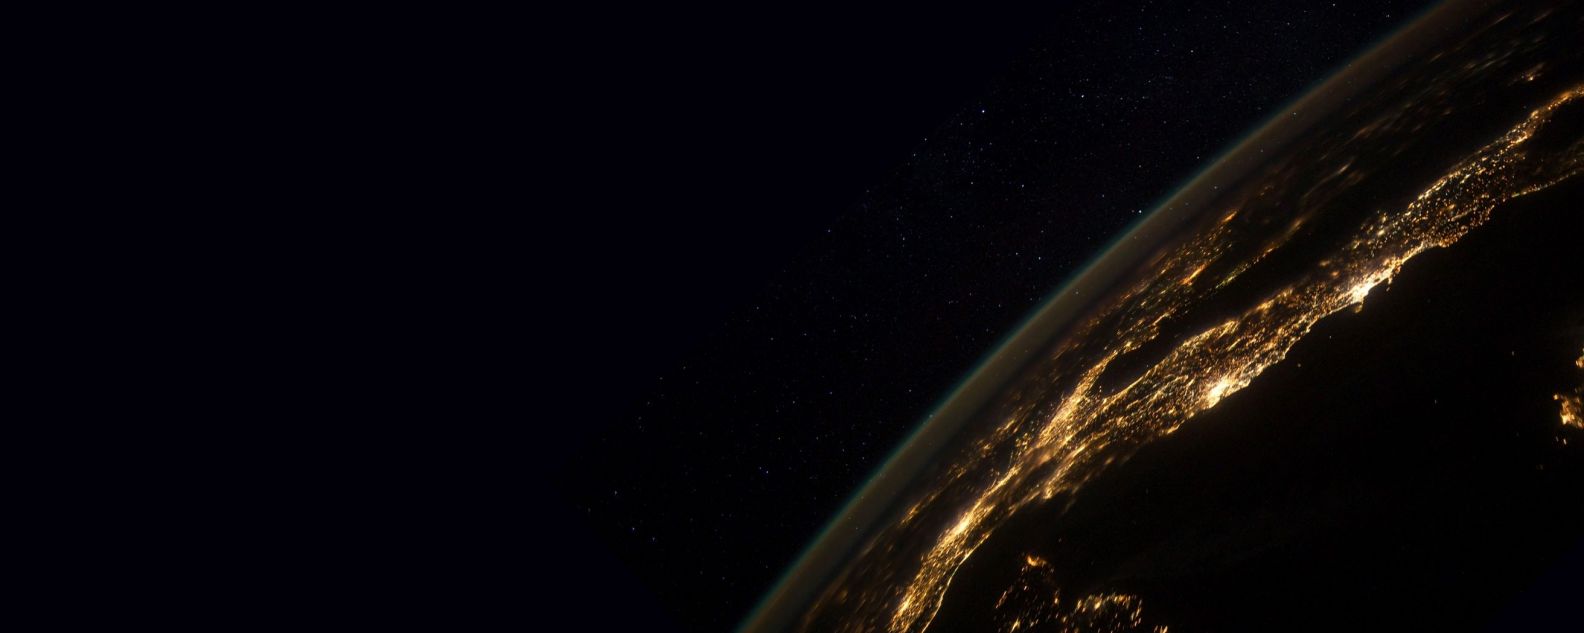 Vista da Terra do espaço com luzes da cidade à noite.